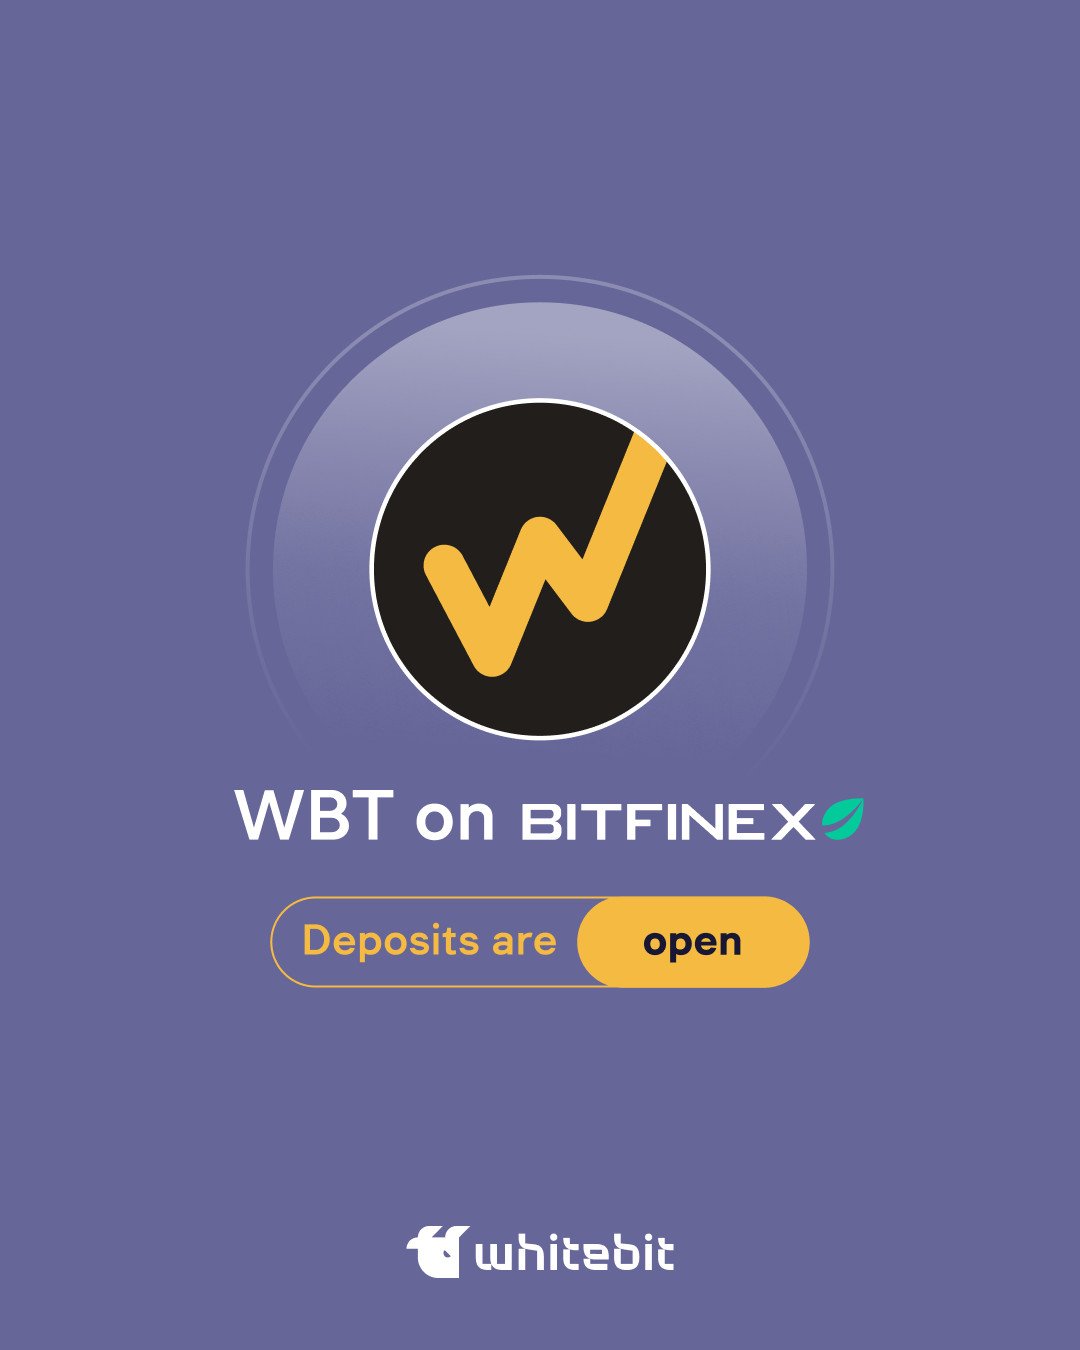 June 1 marks the trading start of WhiteBIT Token on Bitfinex Source: https://twitter.com/WhiteBit  